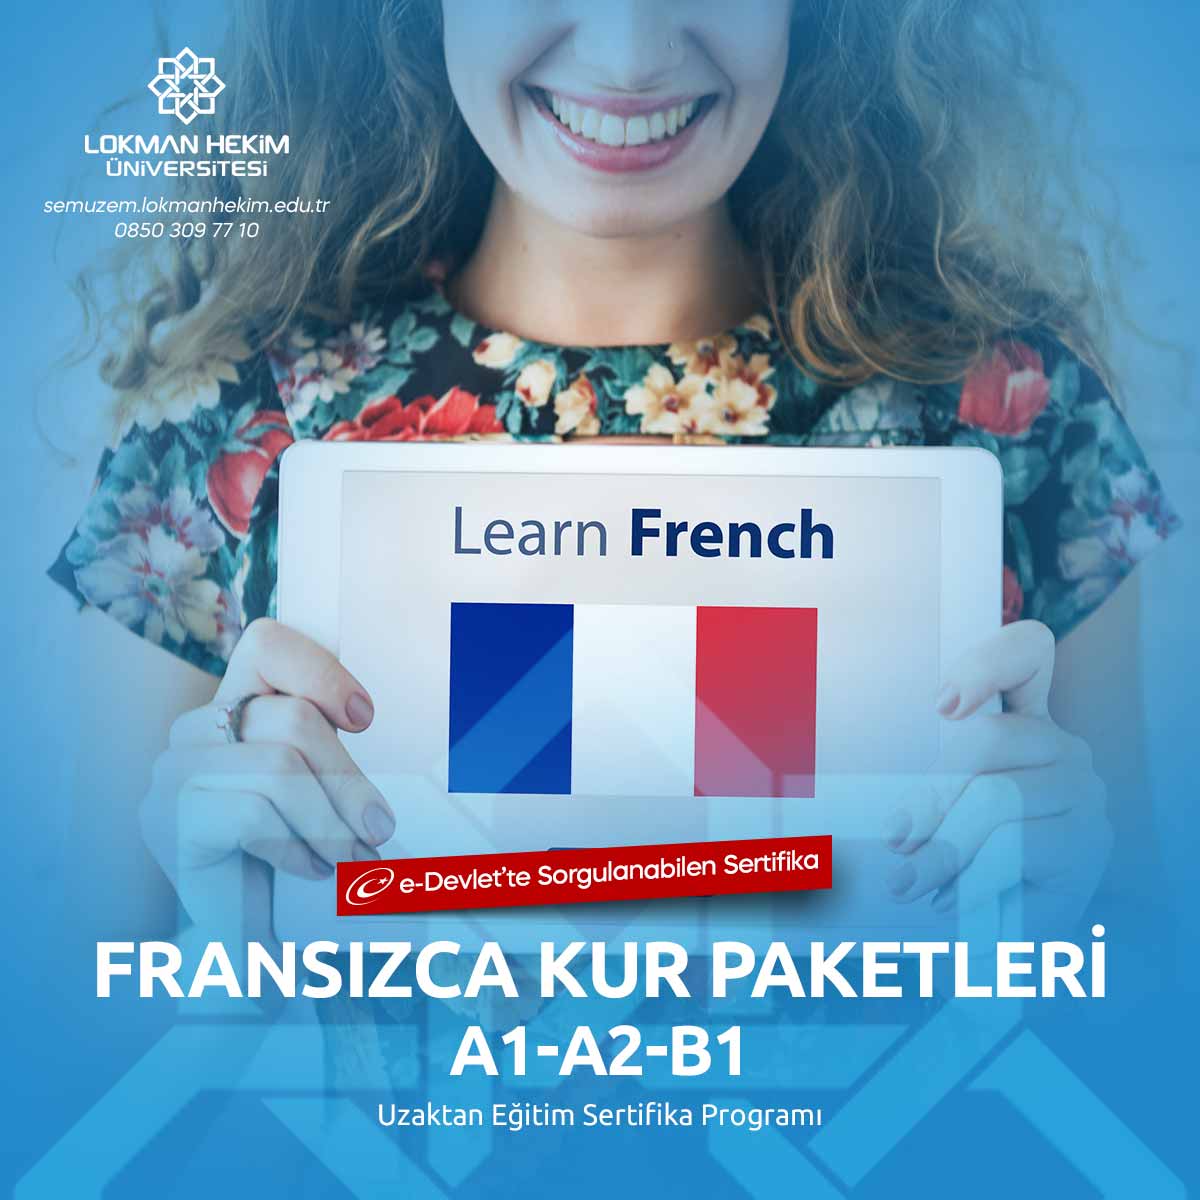 A1 Seviye Fransızca Sertifikası Nedir, Nasıl Alınır?